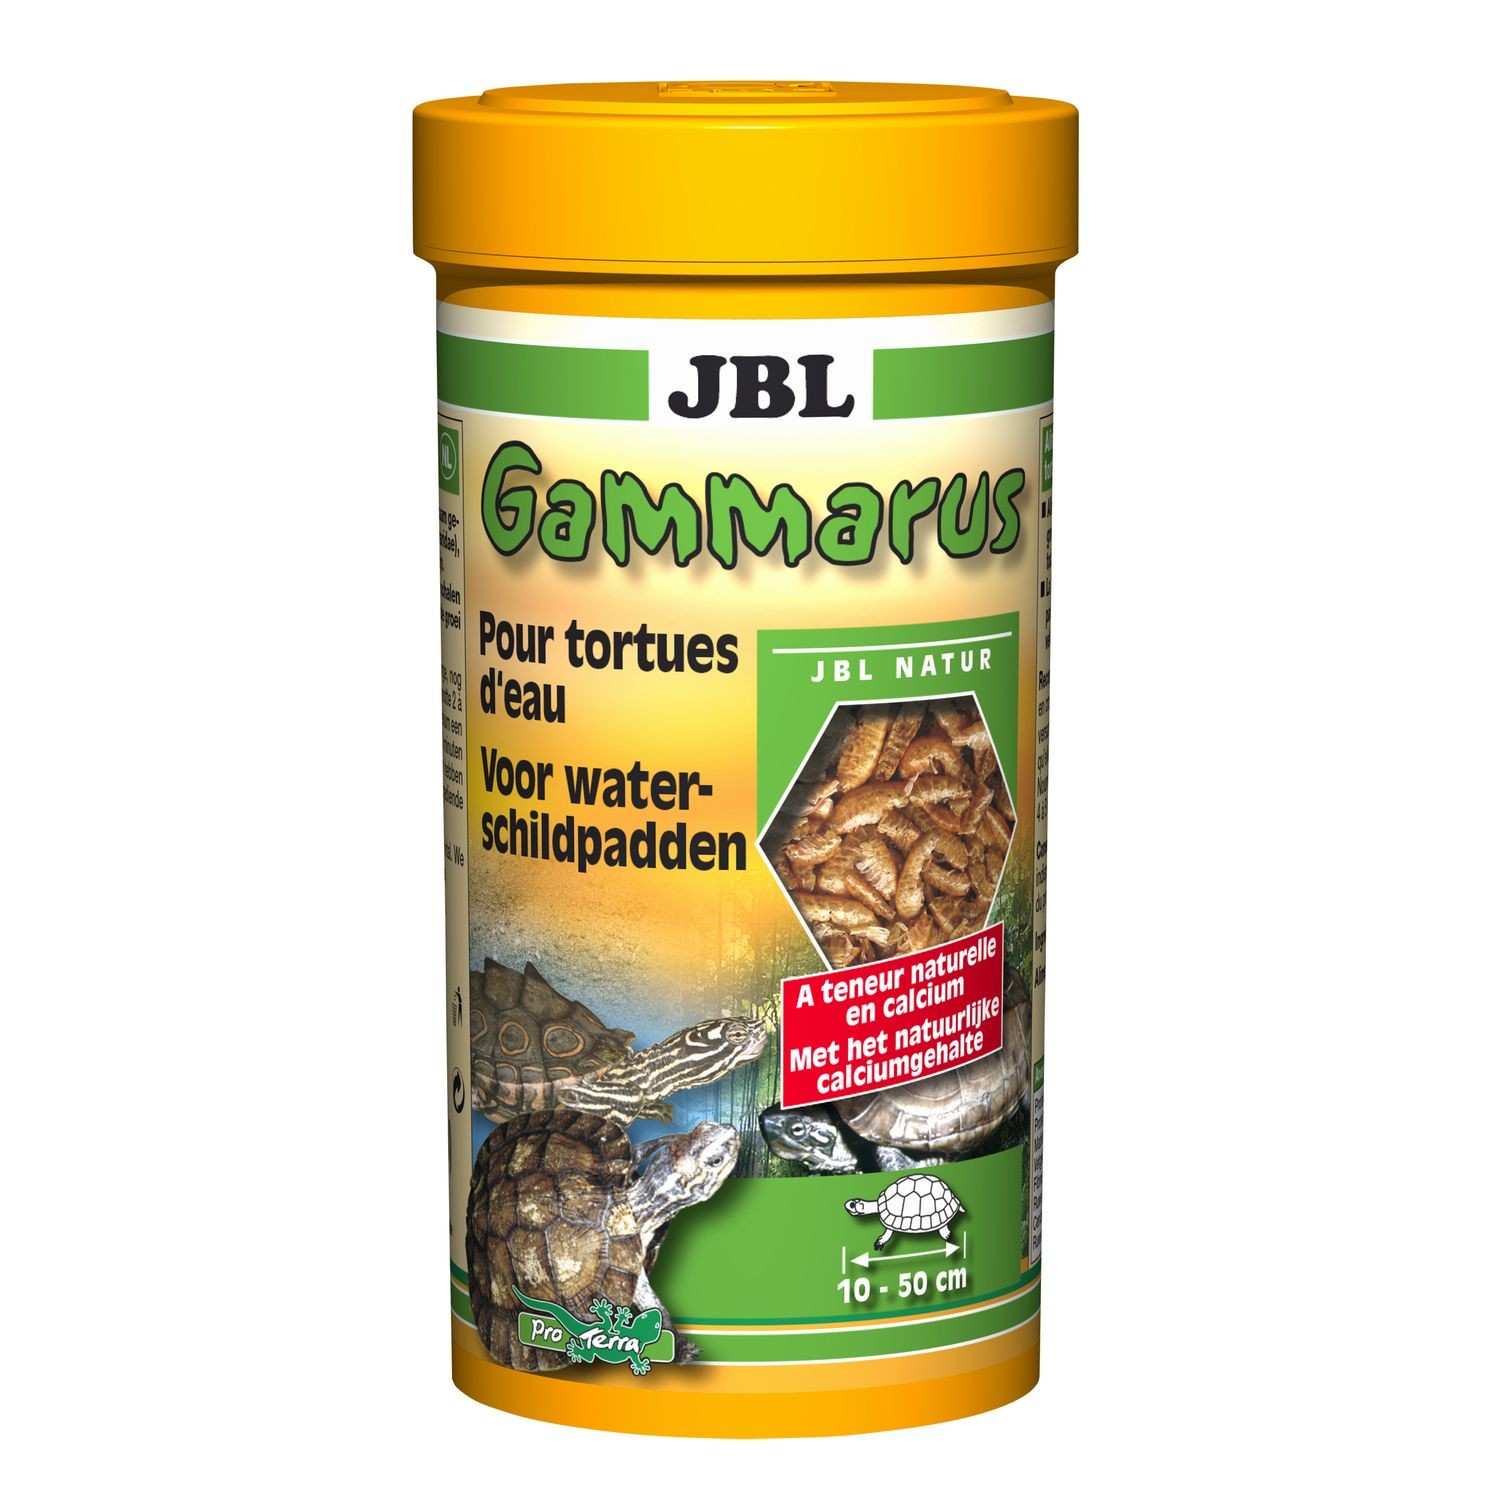 JBL Gammarus voersupplement voor waterschildpadden